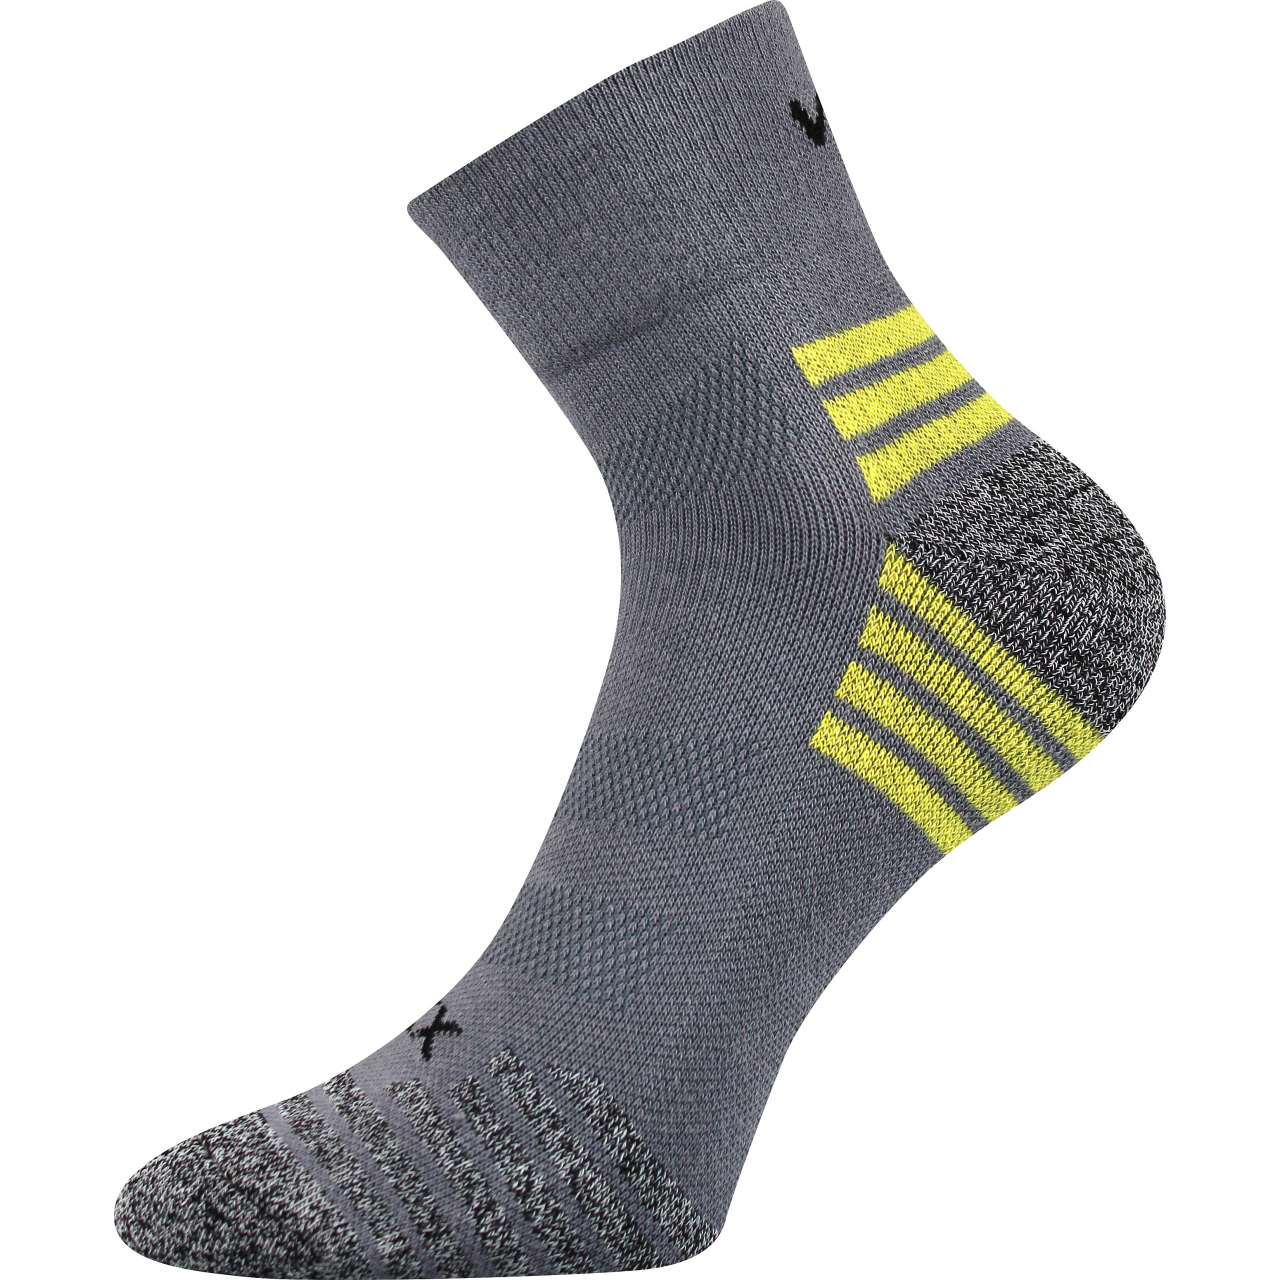 Ponožky unisex sportovní Voxx Sigma B - šedé-žluté, 35-38